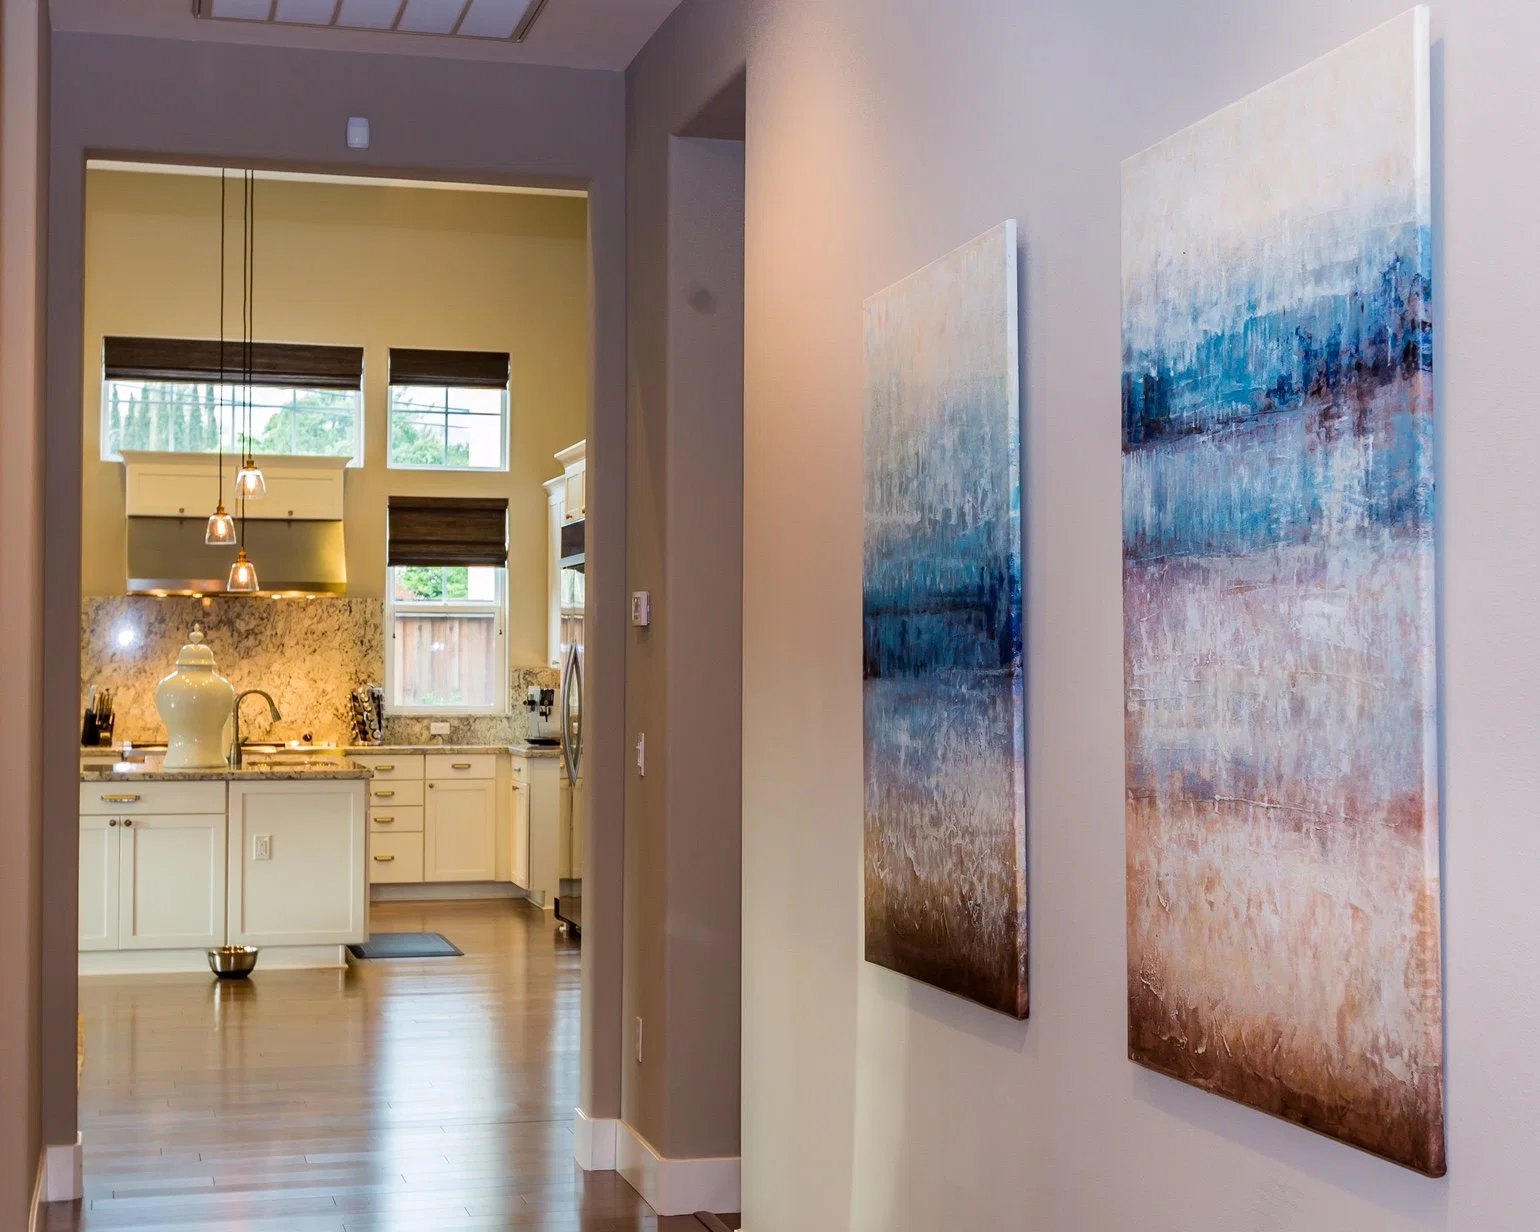 Grupo de lienzo abstracto moderno hecho a mano pinturas al óleo para la decoración del hogar